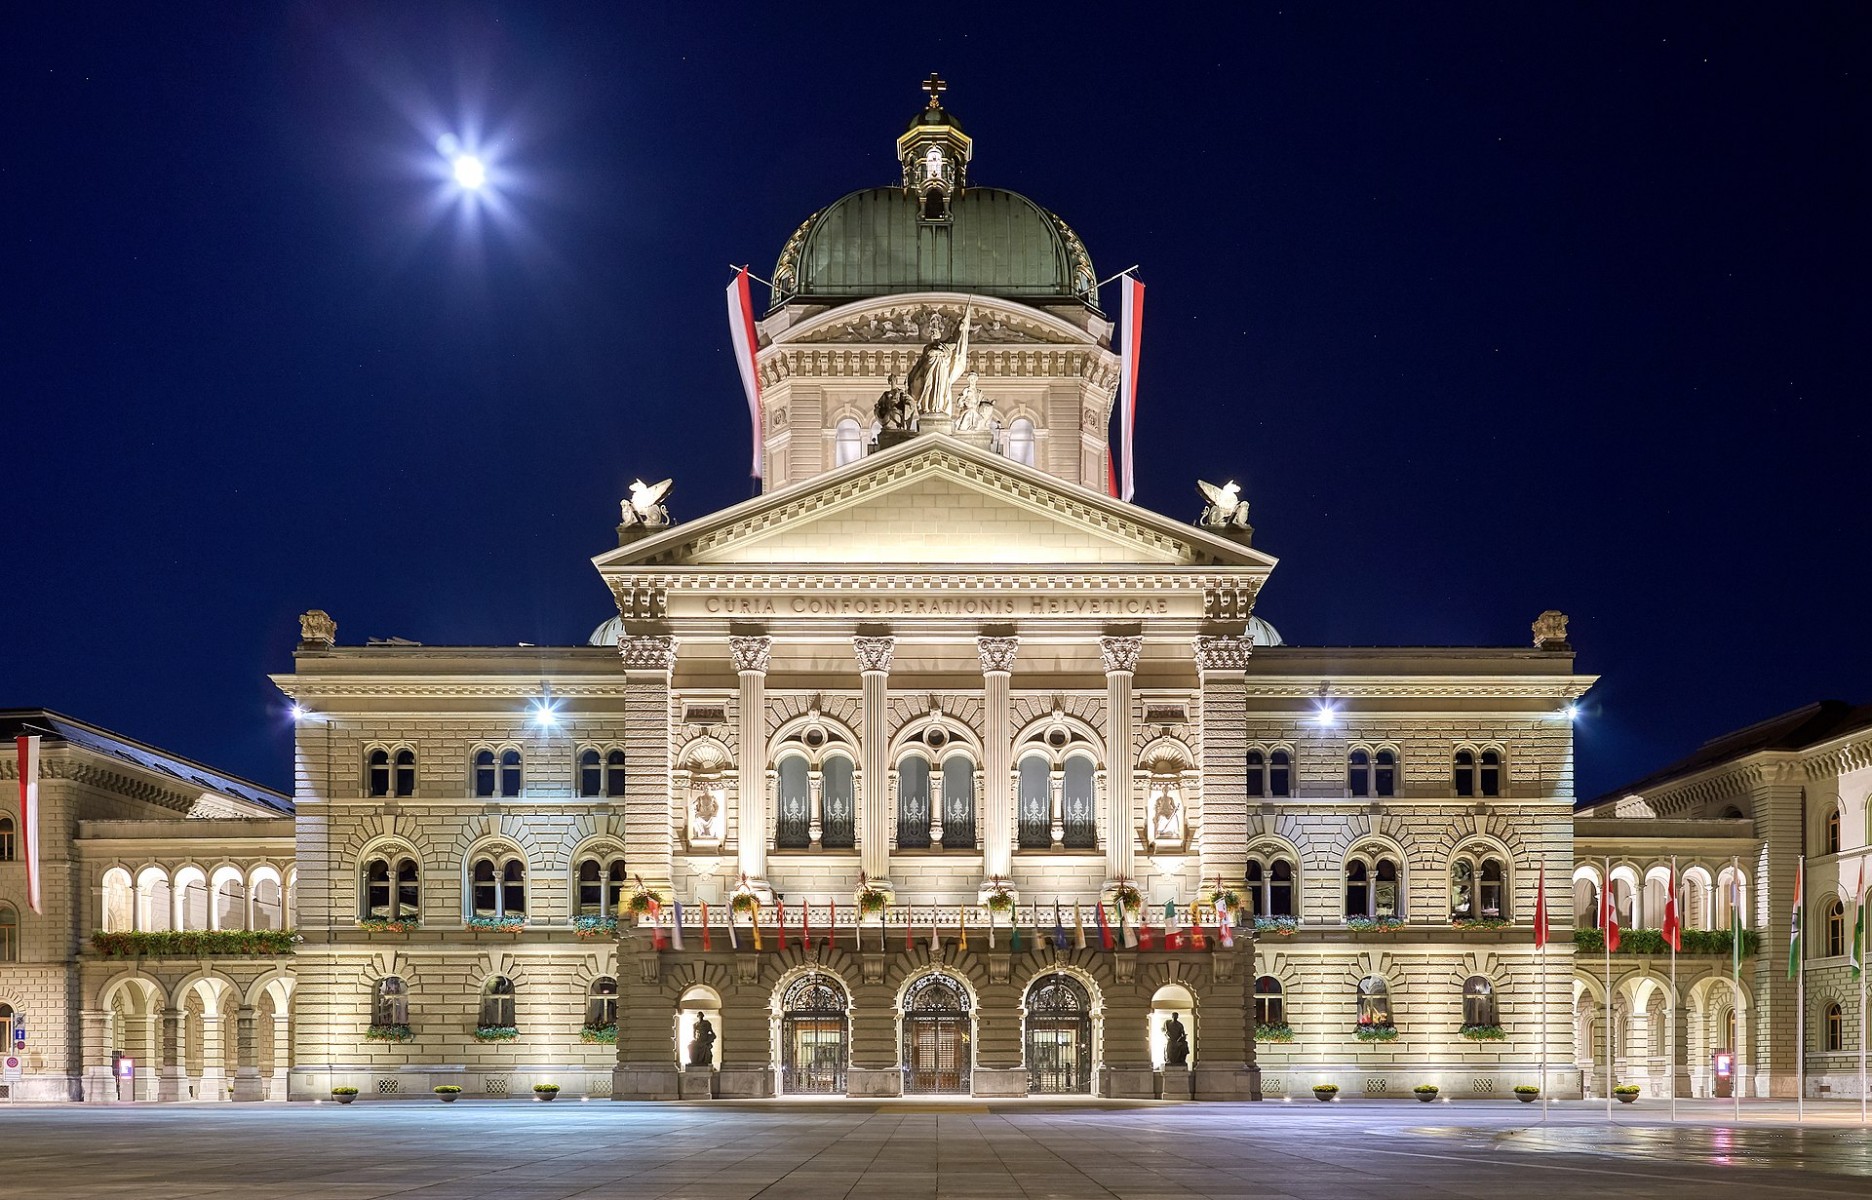 Федеральный дворец (парламент) в Берне. Северный фасад. 13 сентября 2019 года. Источник фото: Викисклад (Wikimedia Commons).